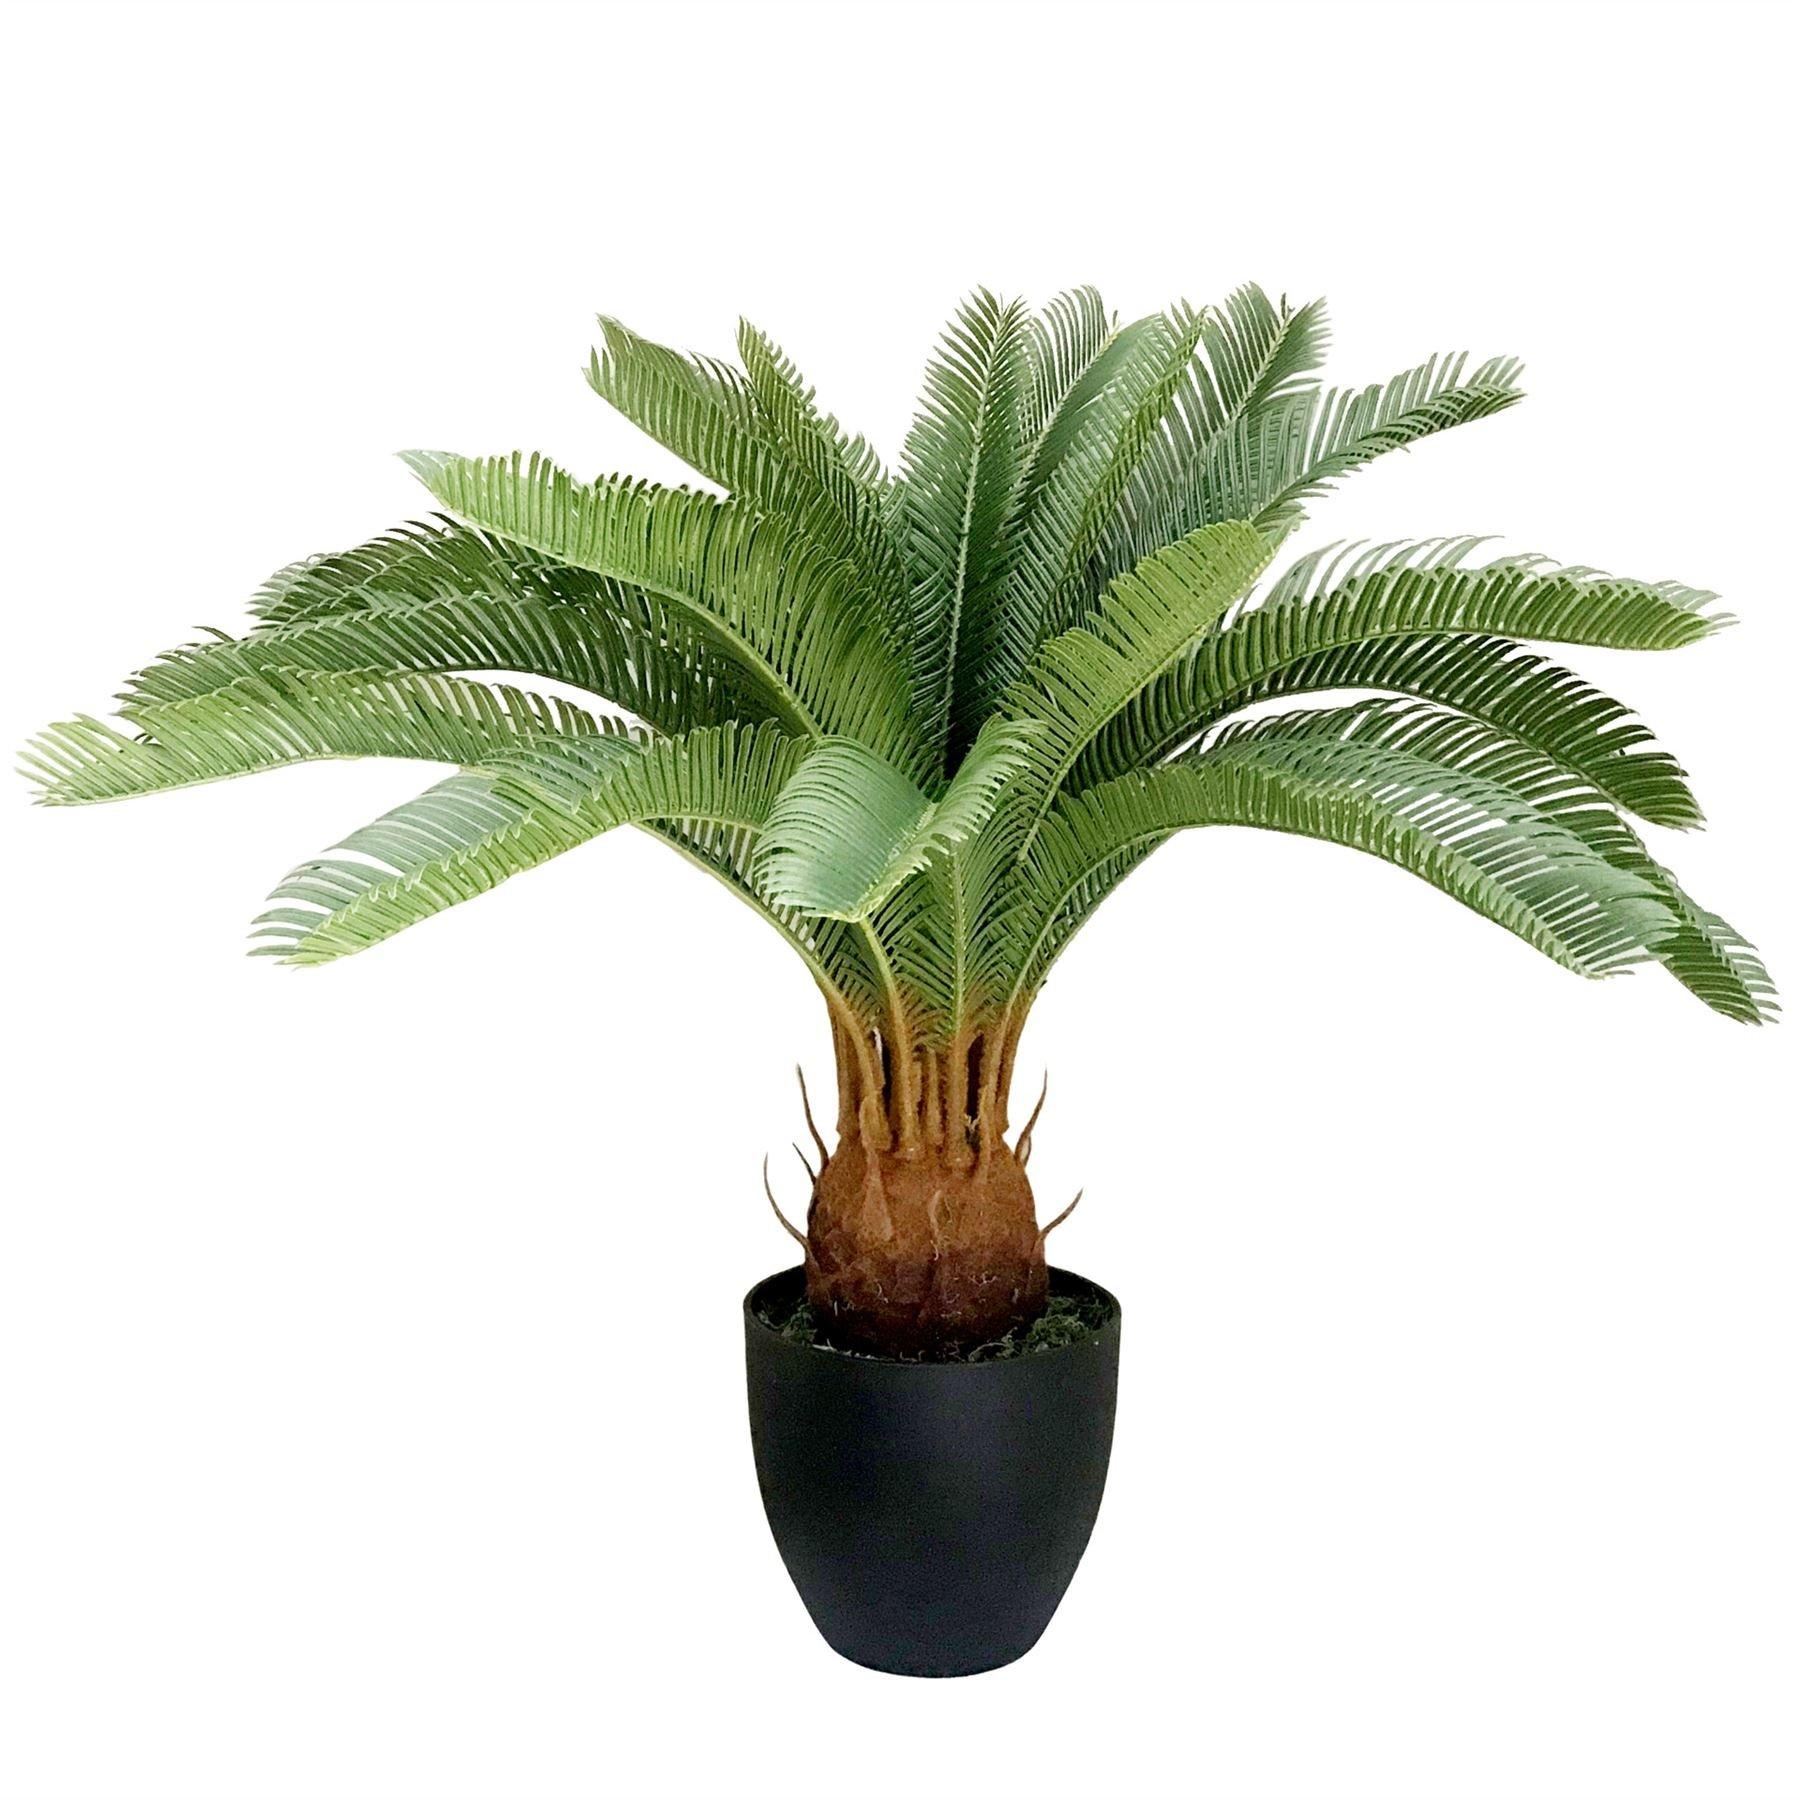 70cm Artificial Tropical Cycas Palm Plant